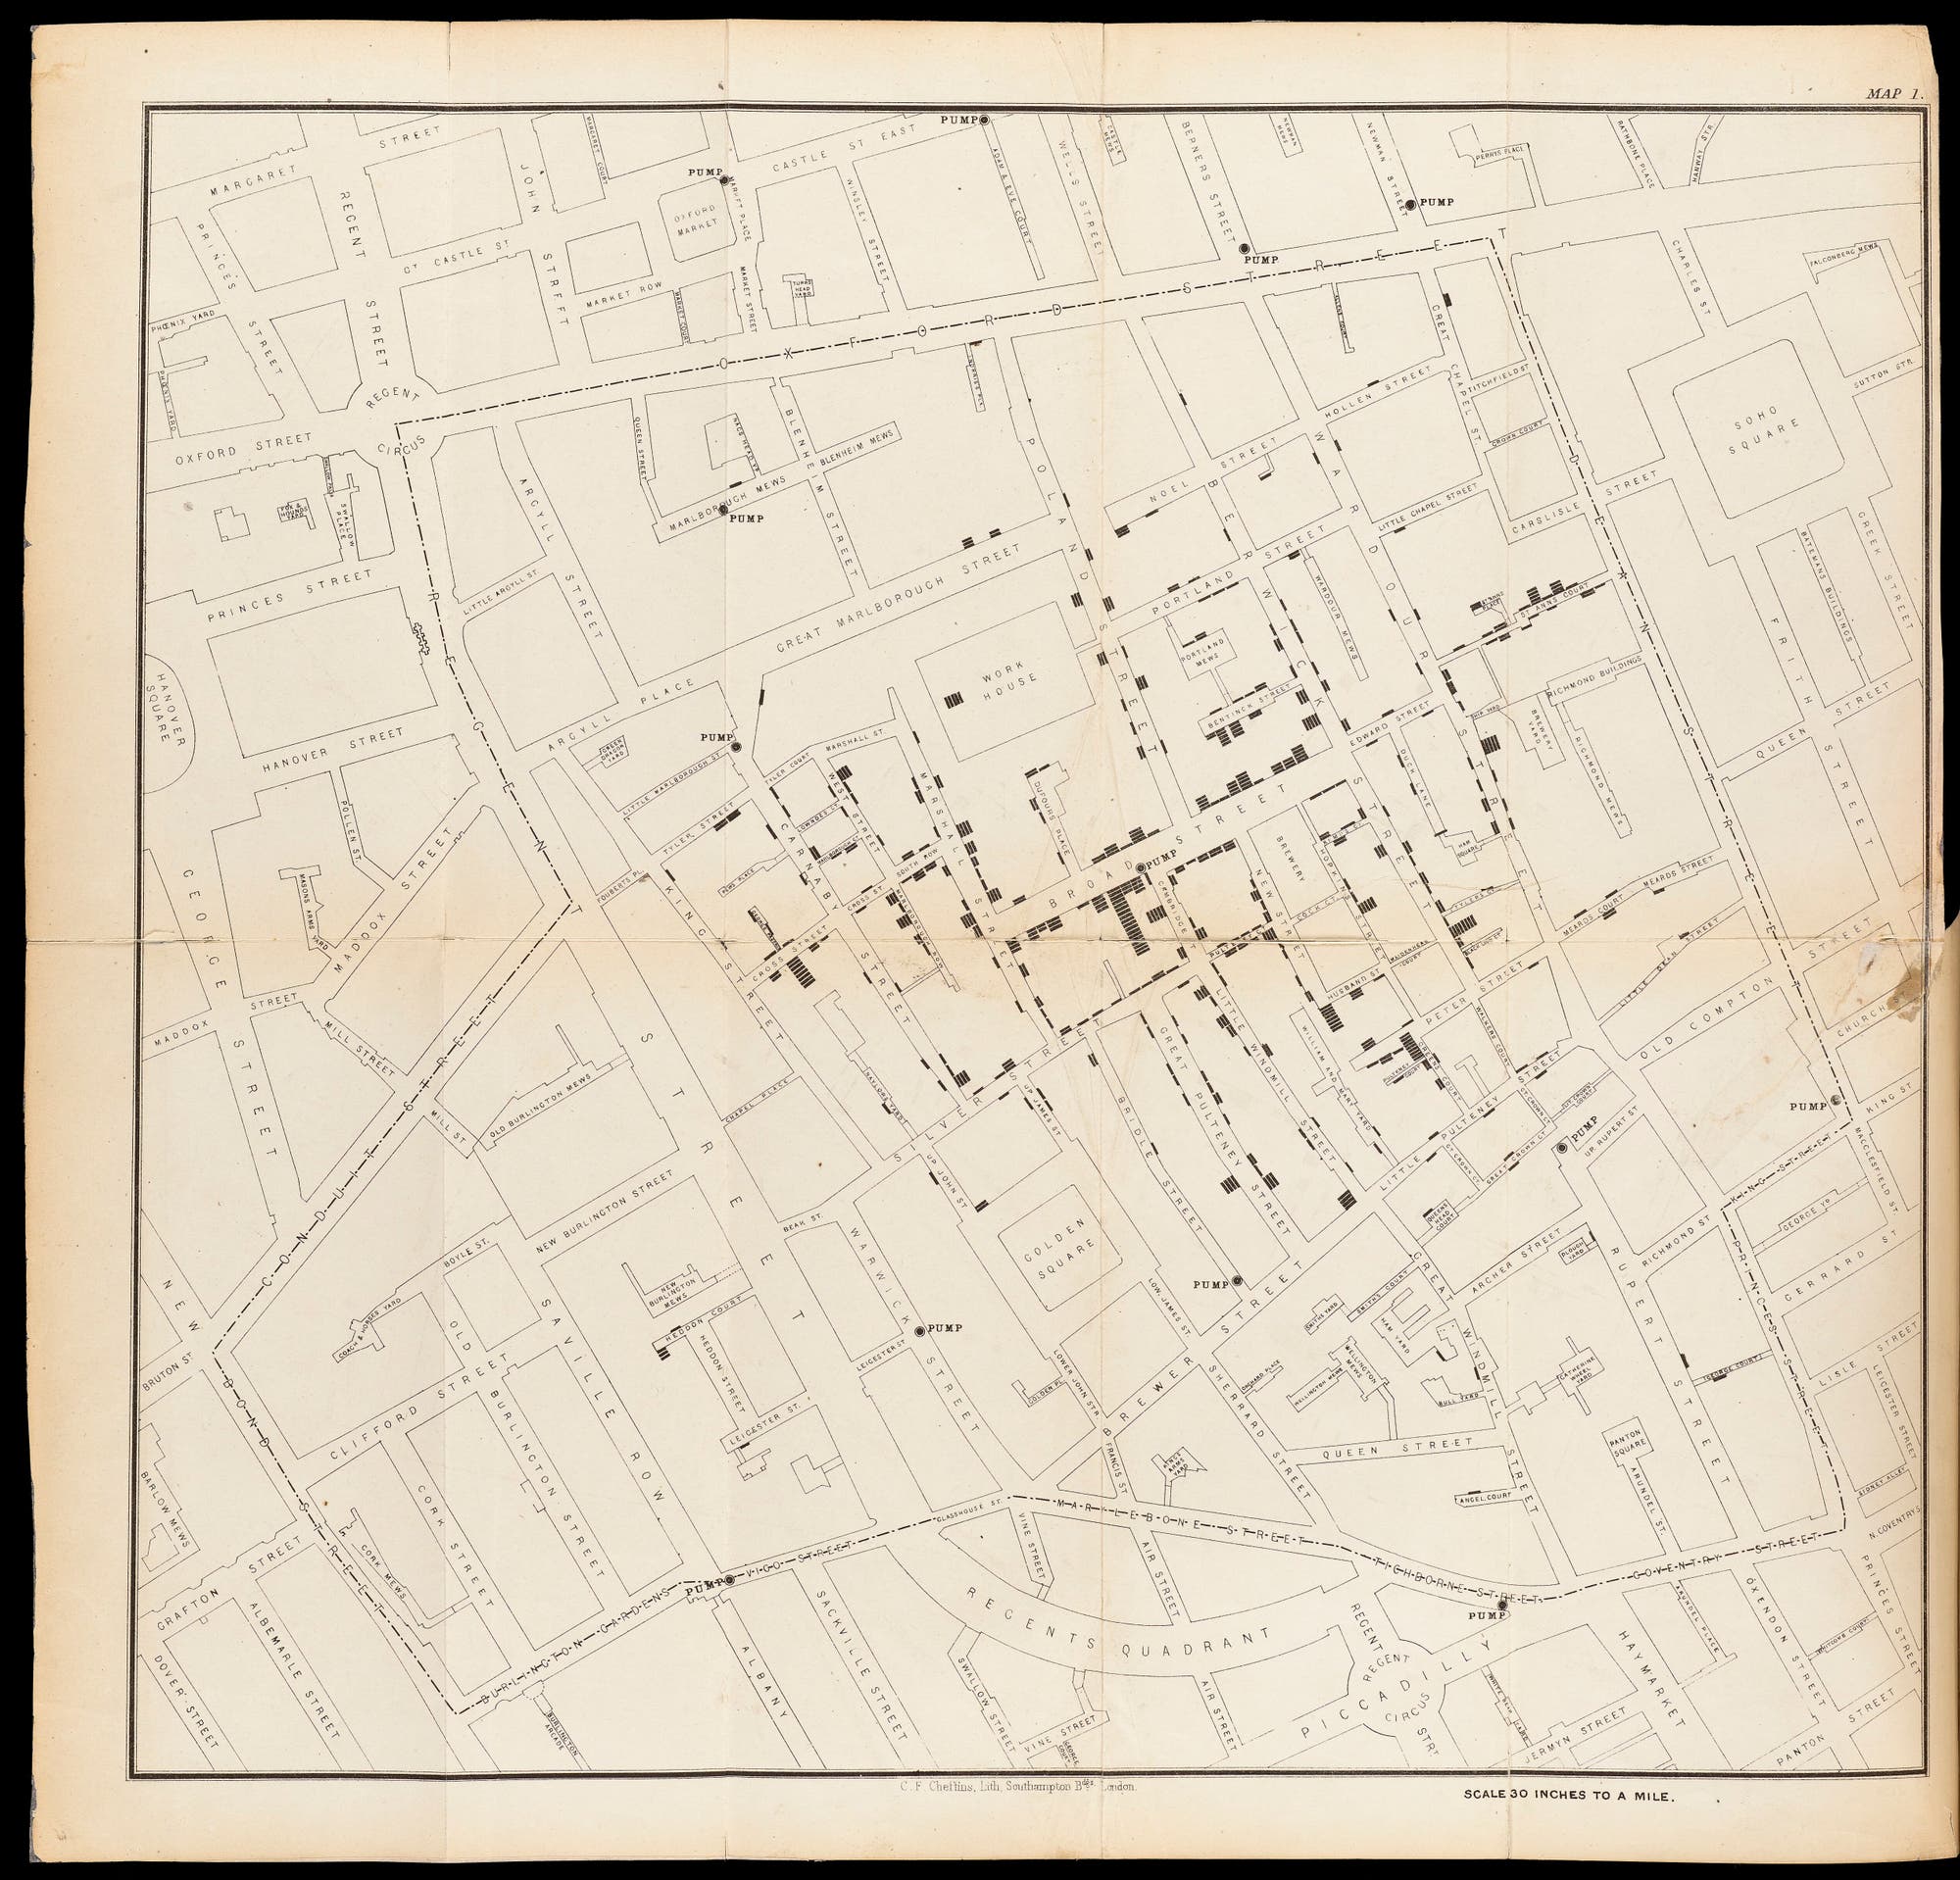 Eine Karte des Londoner Stadtteils Soho mit eingezeichneten Punkten